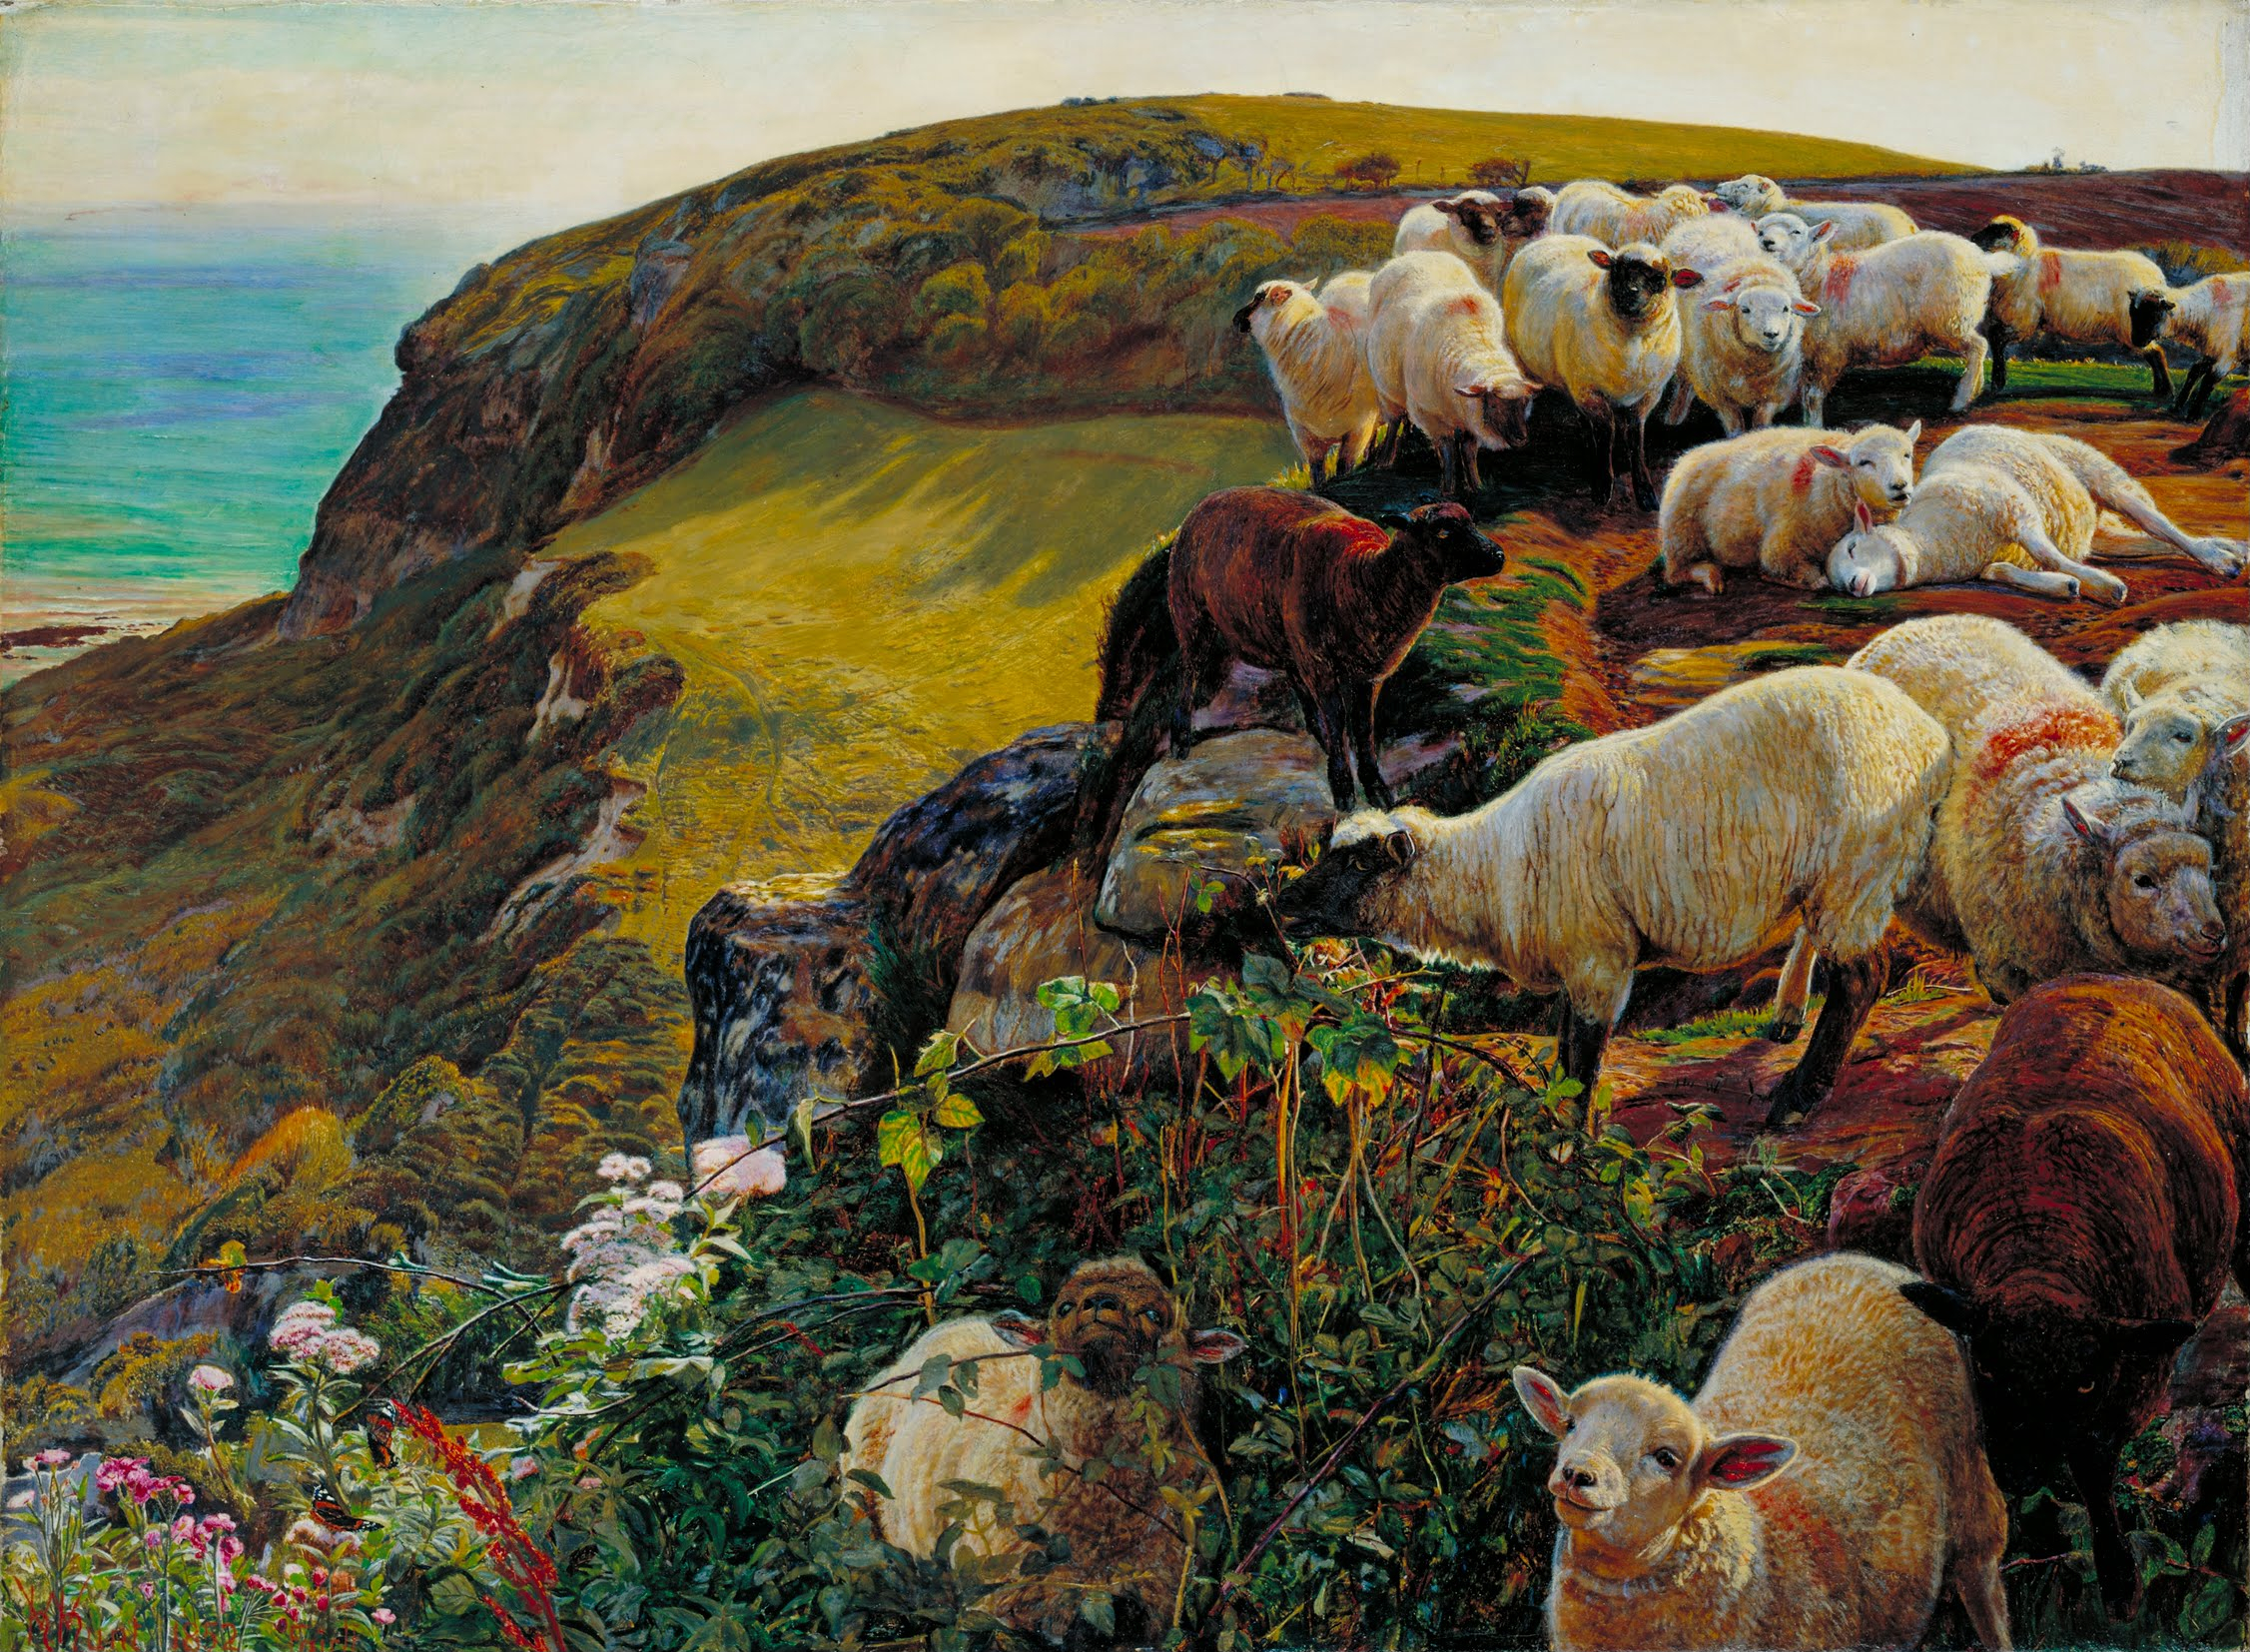 سواحل انگلیسی ما، 1852 ("گوسفندان سرگردان") by William Holman Hunt - 1852 - 58.4 x 43,2 cm 